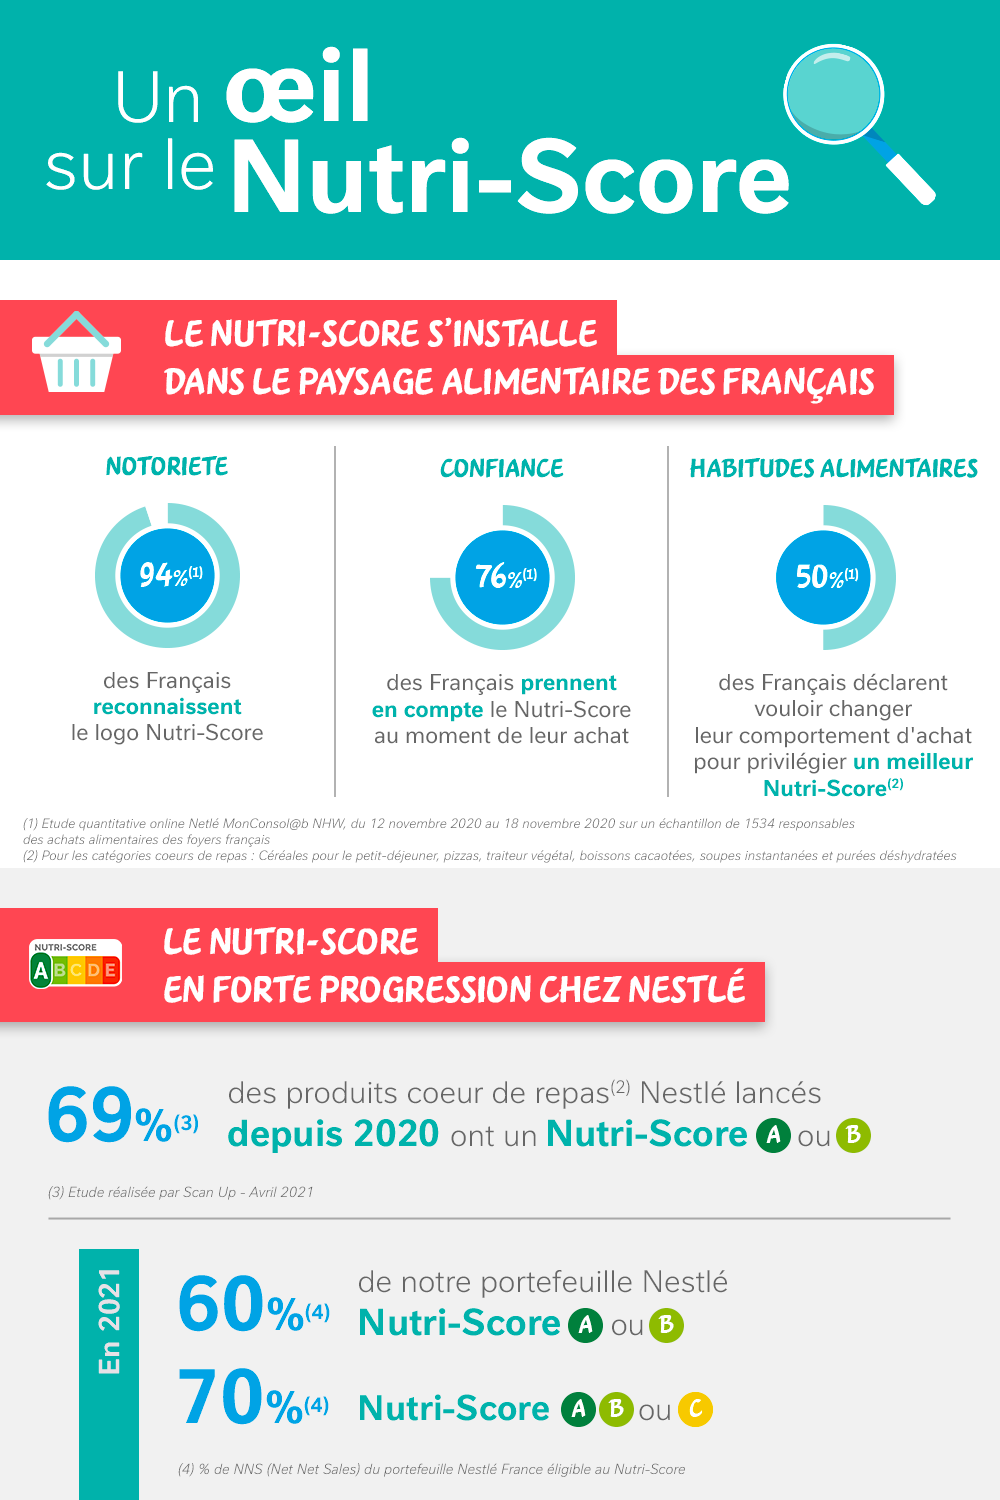 Nutrition Nestlé : Un œil sur le Nutri-Score